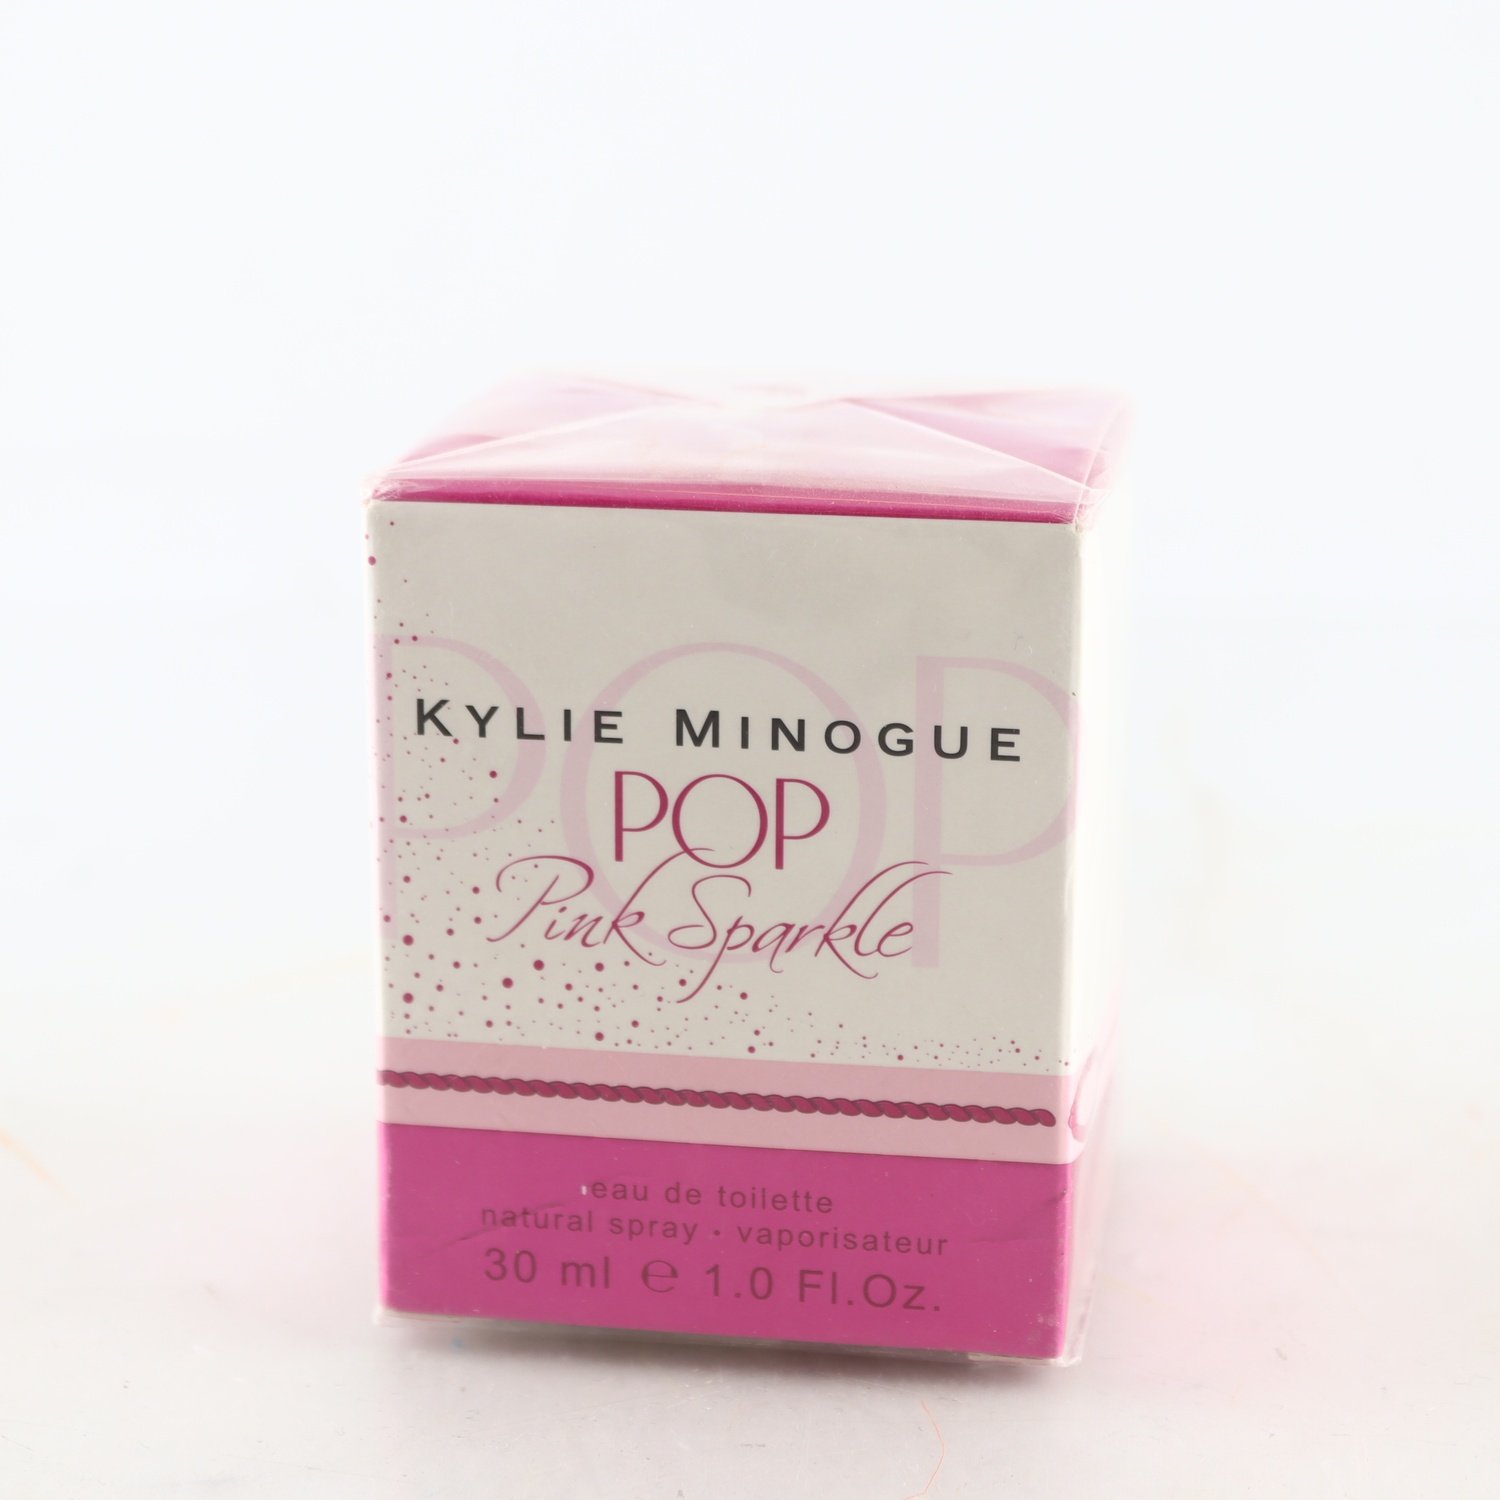 Edt. Pop, Pink Sparkle, Kylie Minogue.